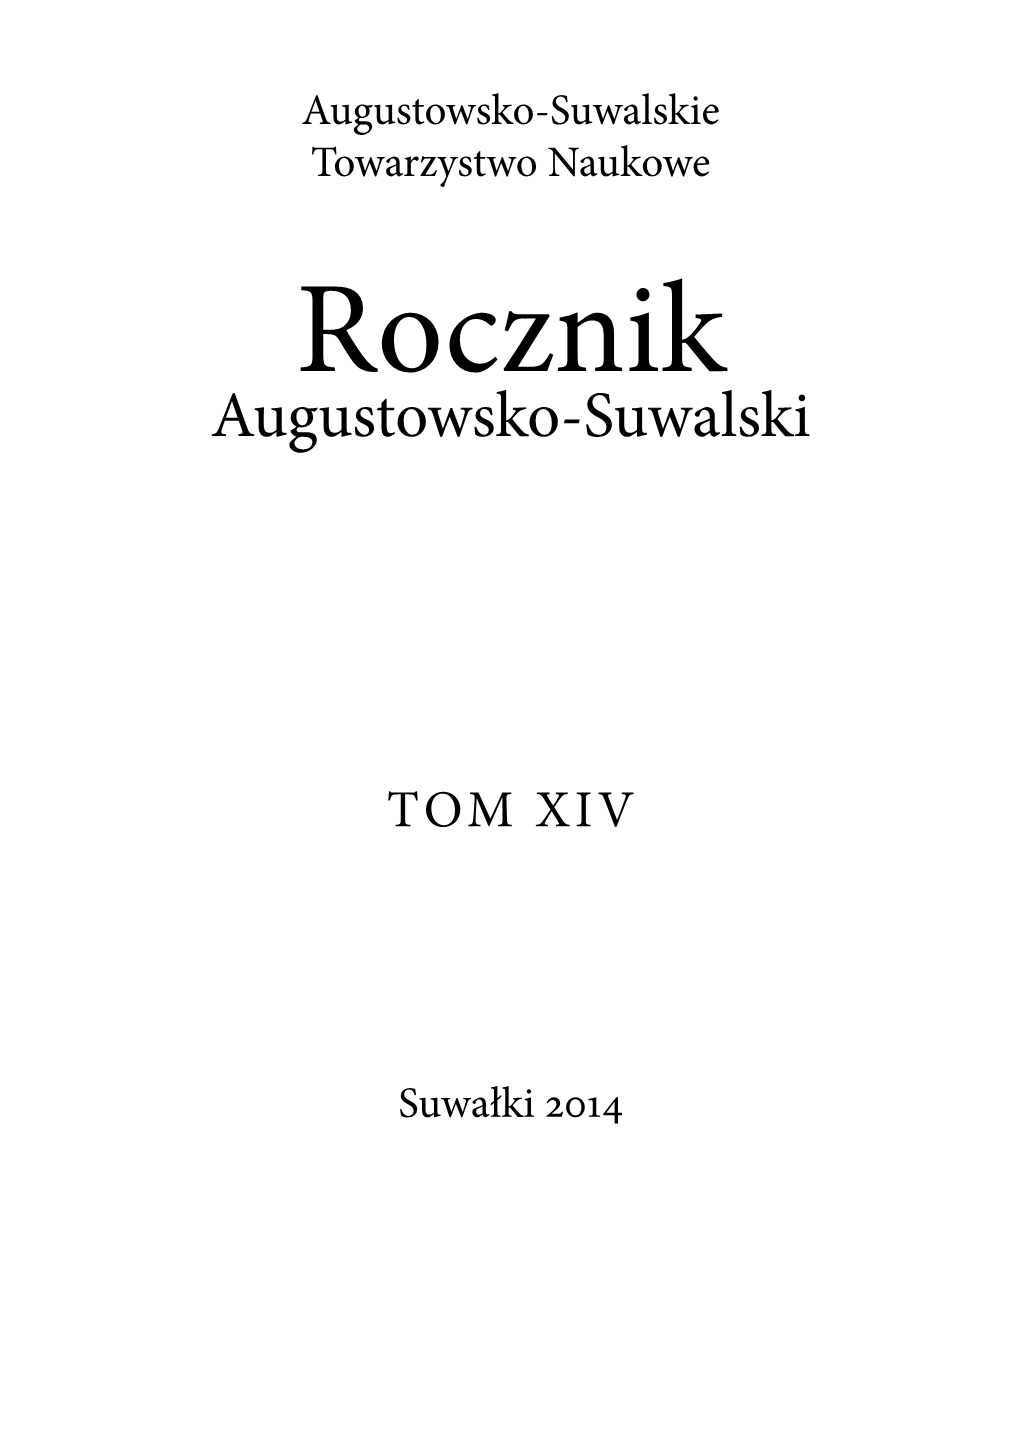 2014 Redaktor Naczelny Mgr Andrzej Matusiewicz